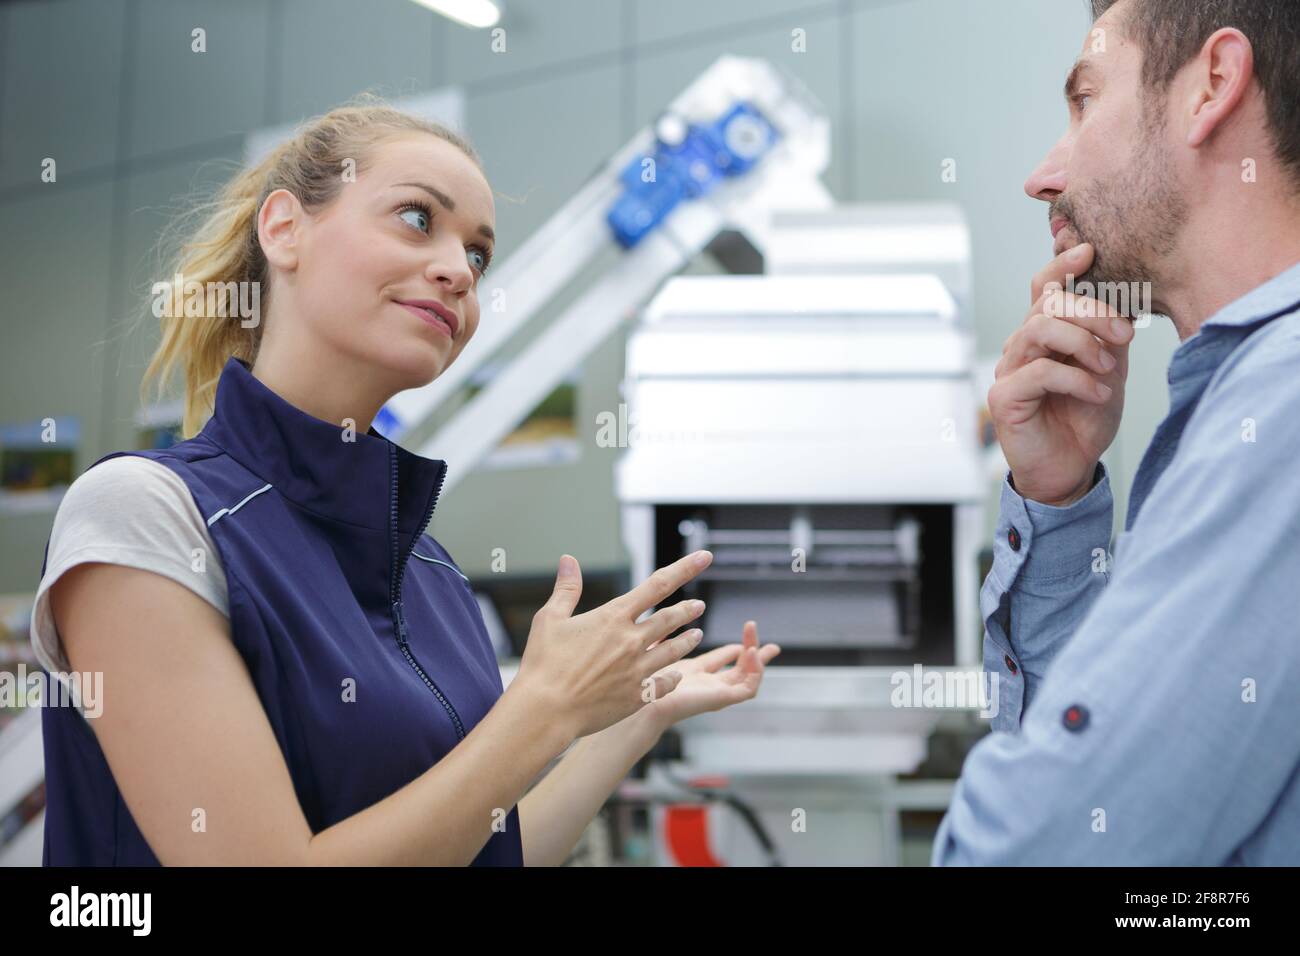 donna fabbrica operativa gesturing verso macchinari durante la discussione Foto Stock